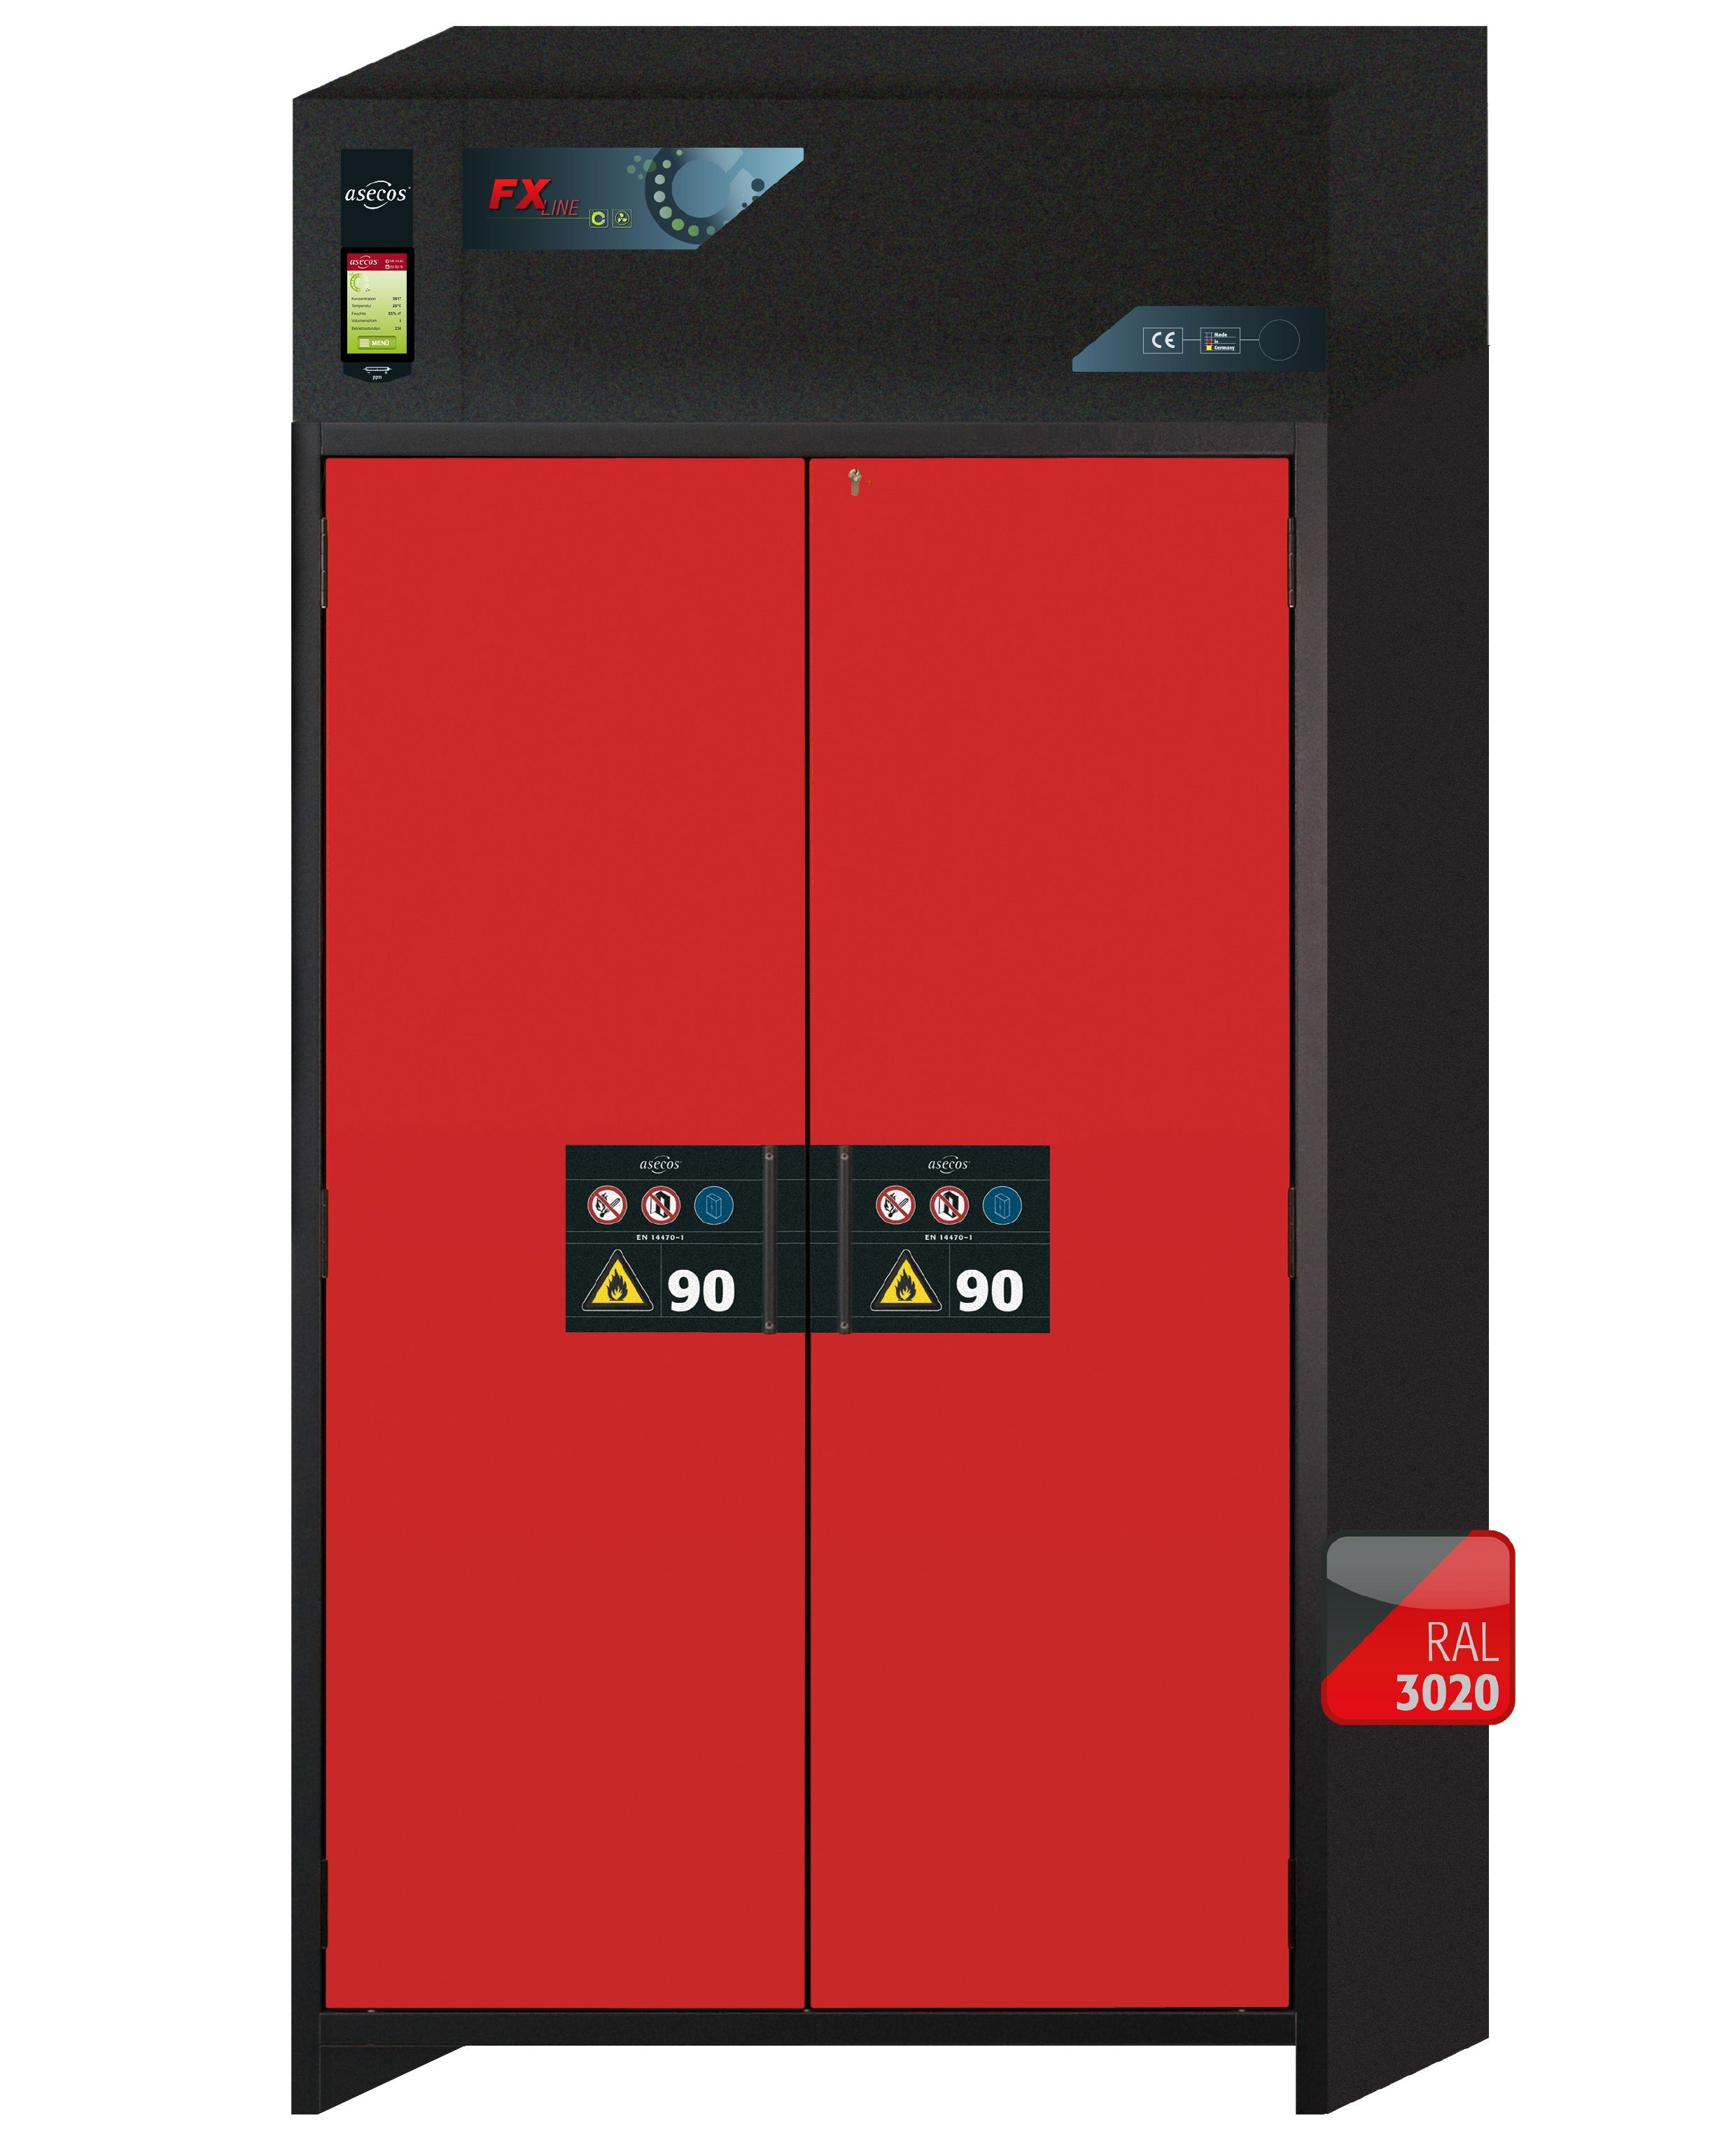 Armoire de filtration d'air recyclé type 90 FX-CLASSIC-90 modèle FX90.229.120.MV en rouge signalisation RAL 3020 avec 6 plateaux coulissants standard (acier inoxydable 1.4301)